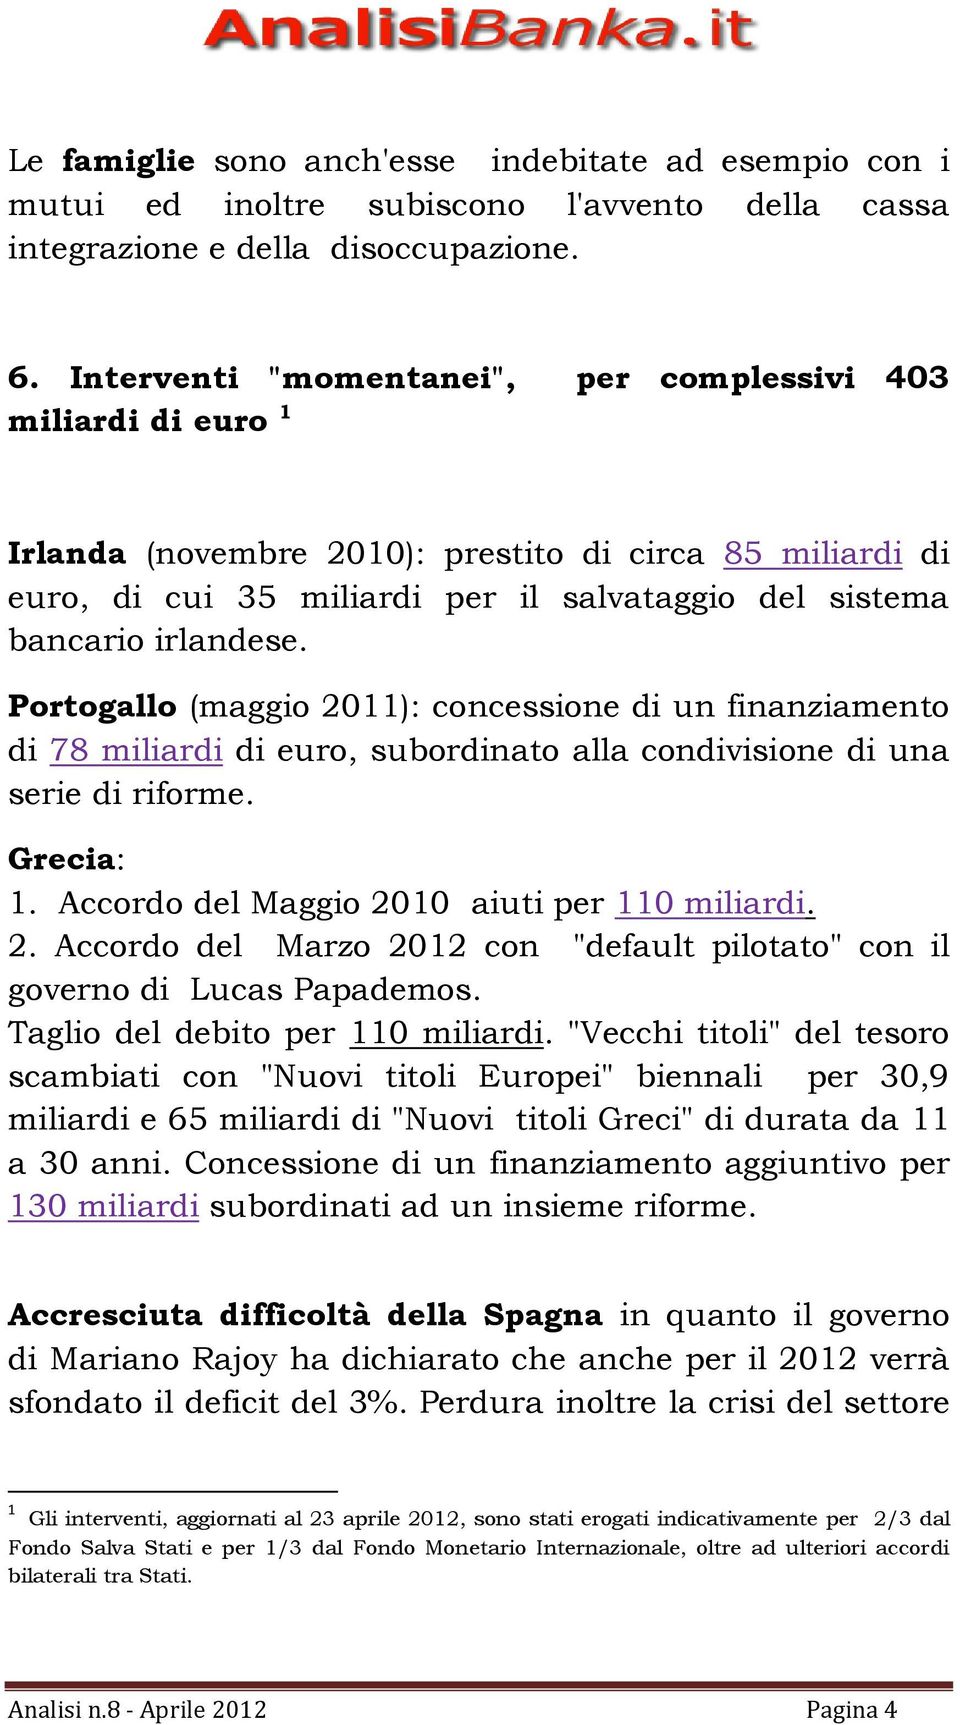 Portogallo (maggio 2011): concessione di un finanziamento di 78 miliardi di euro, subordinato alla condivisione di una serie di riforme. Grecia: 1. Accordo del Maggio 2010 aiuti per 110 miliardi. 2. Accordo del Marzo 2012 con "default pilotato" con il governo di Lucas Papademos.